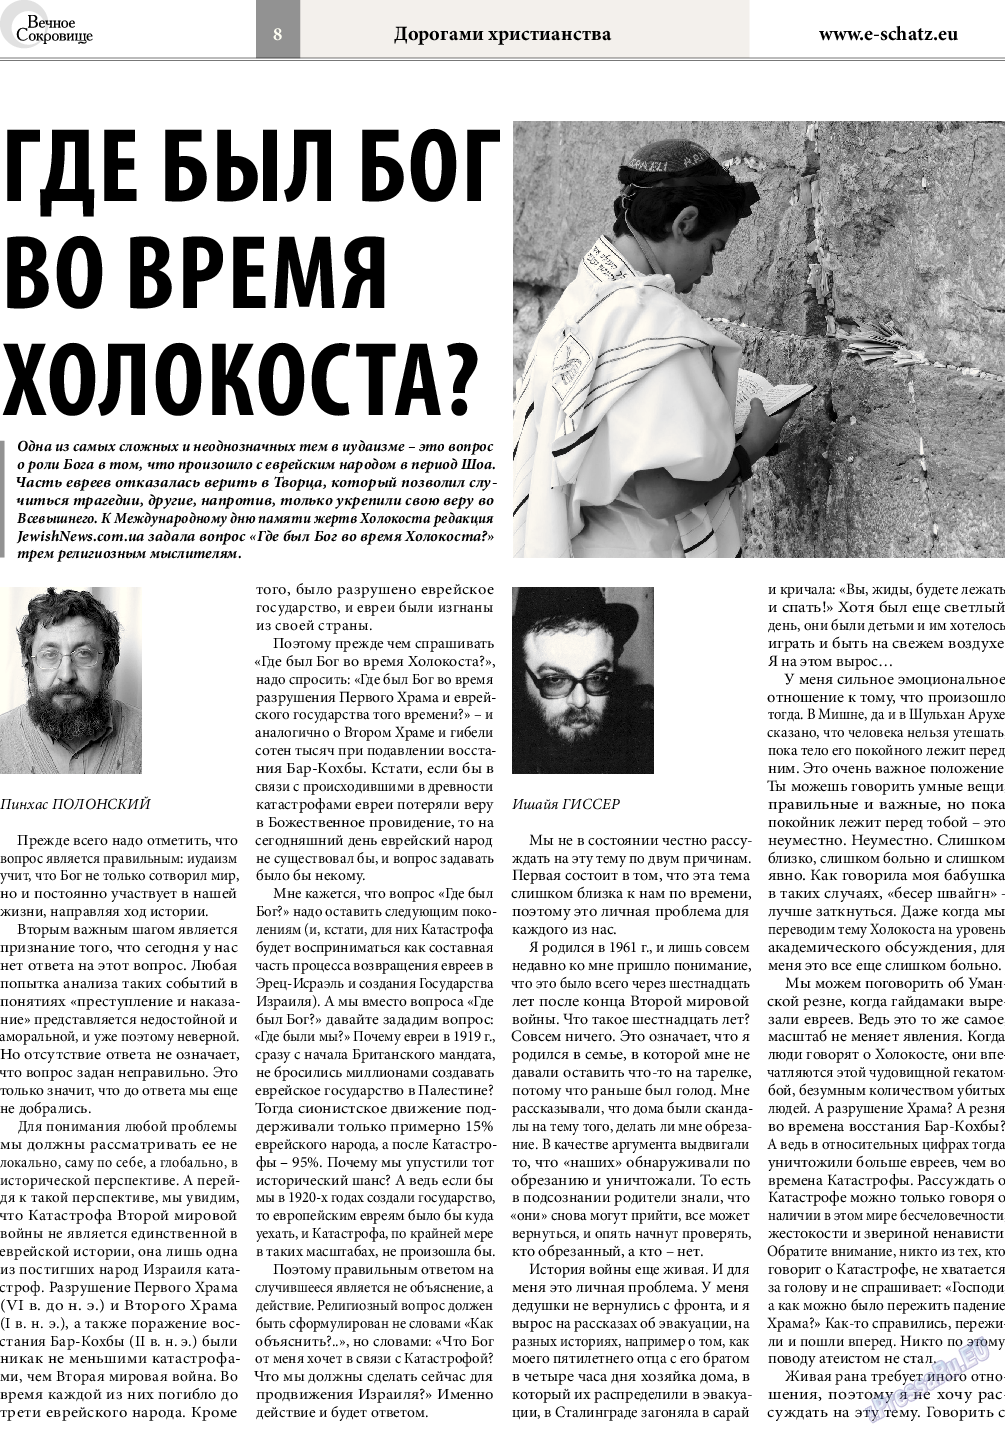 Вечное сокровище, газета. 2016 №1 стр.8